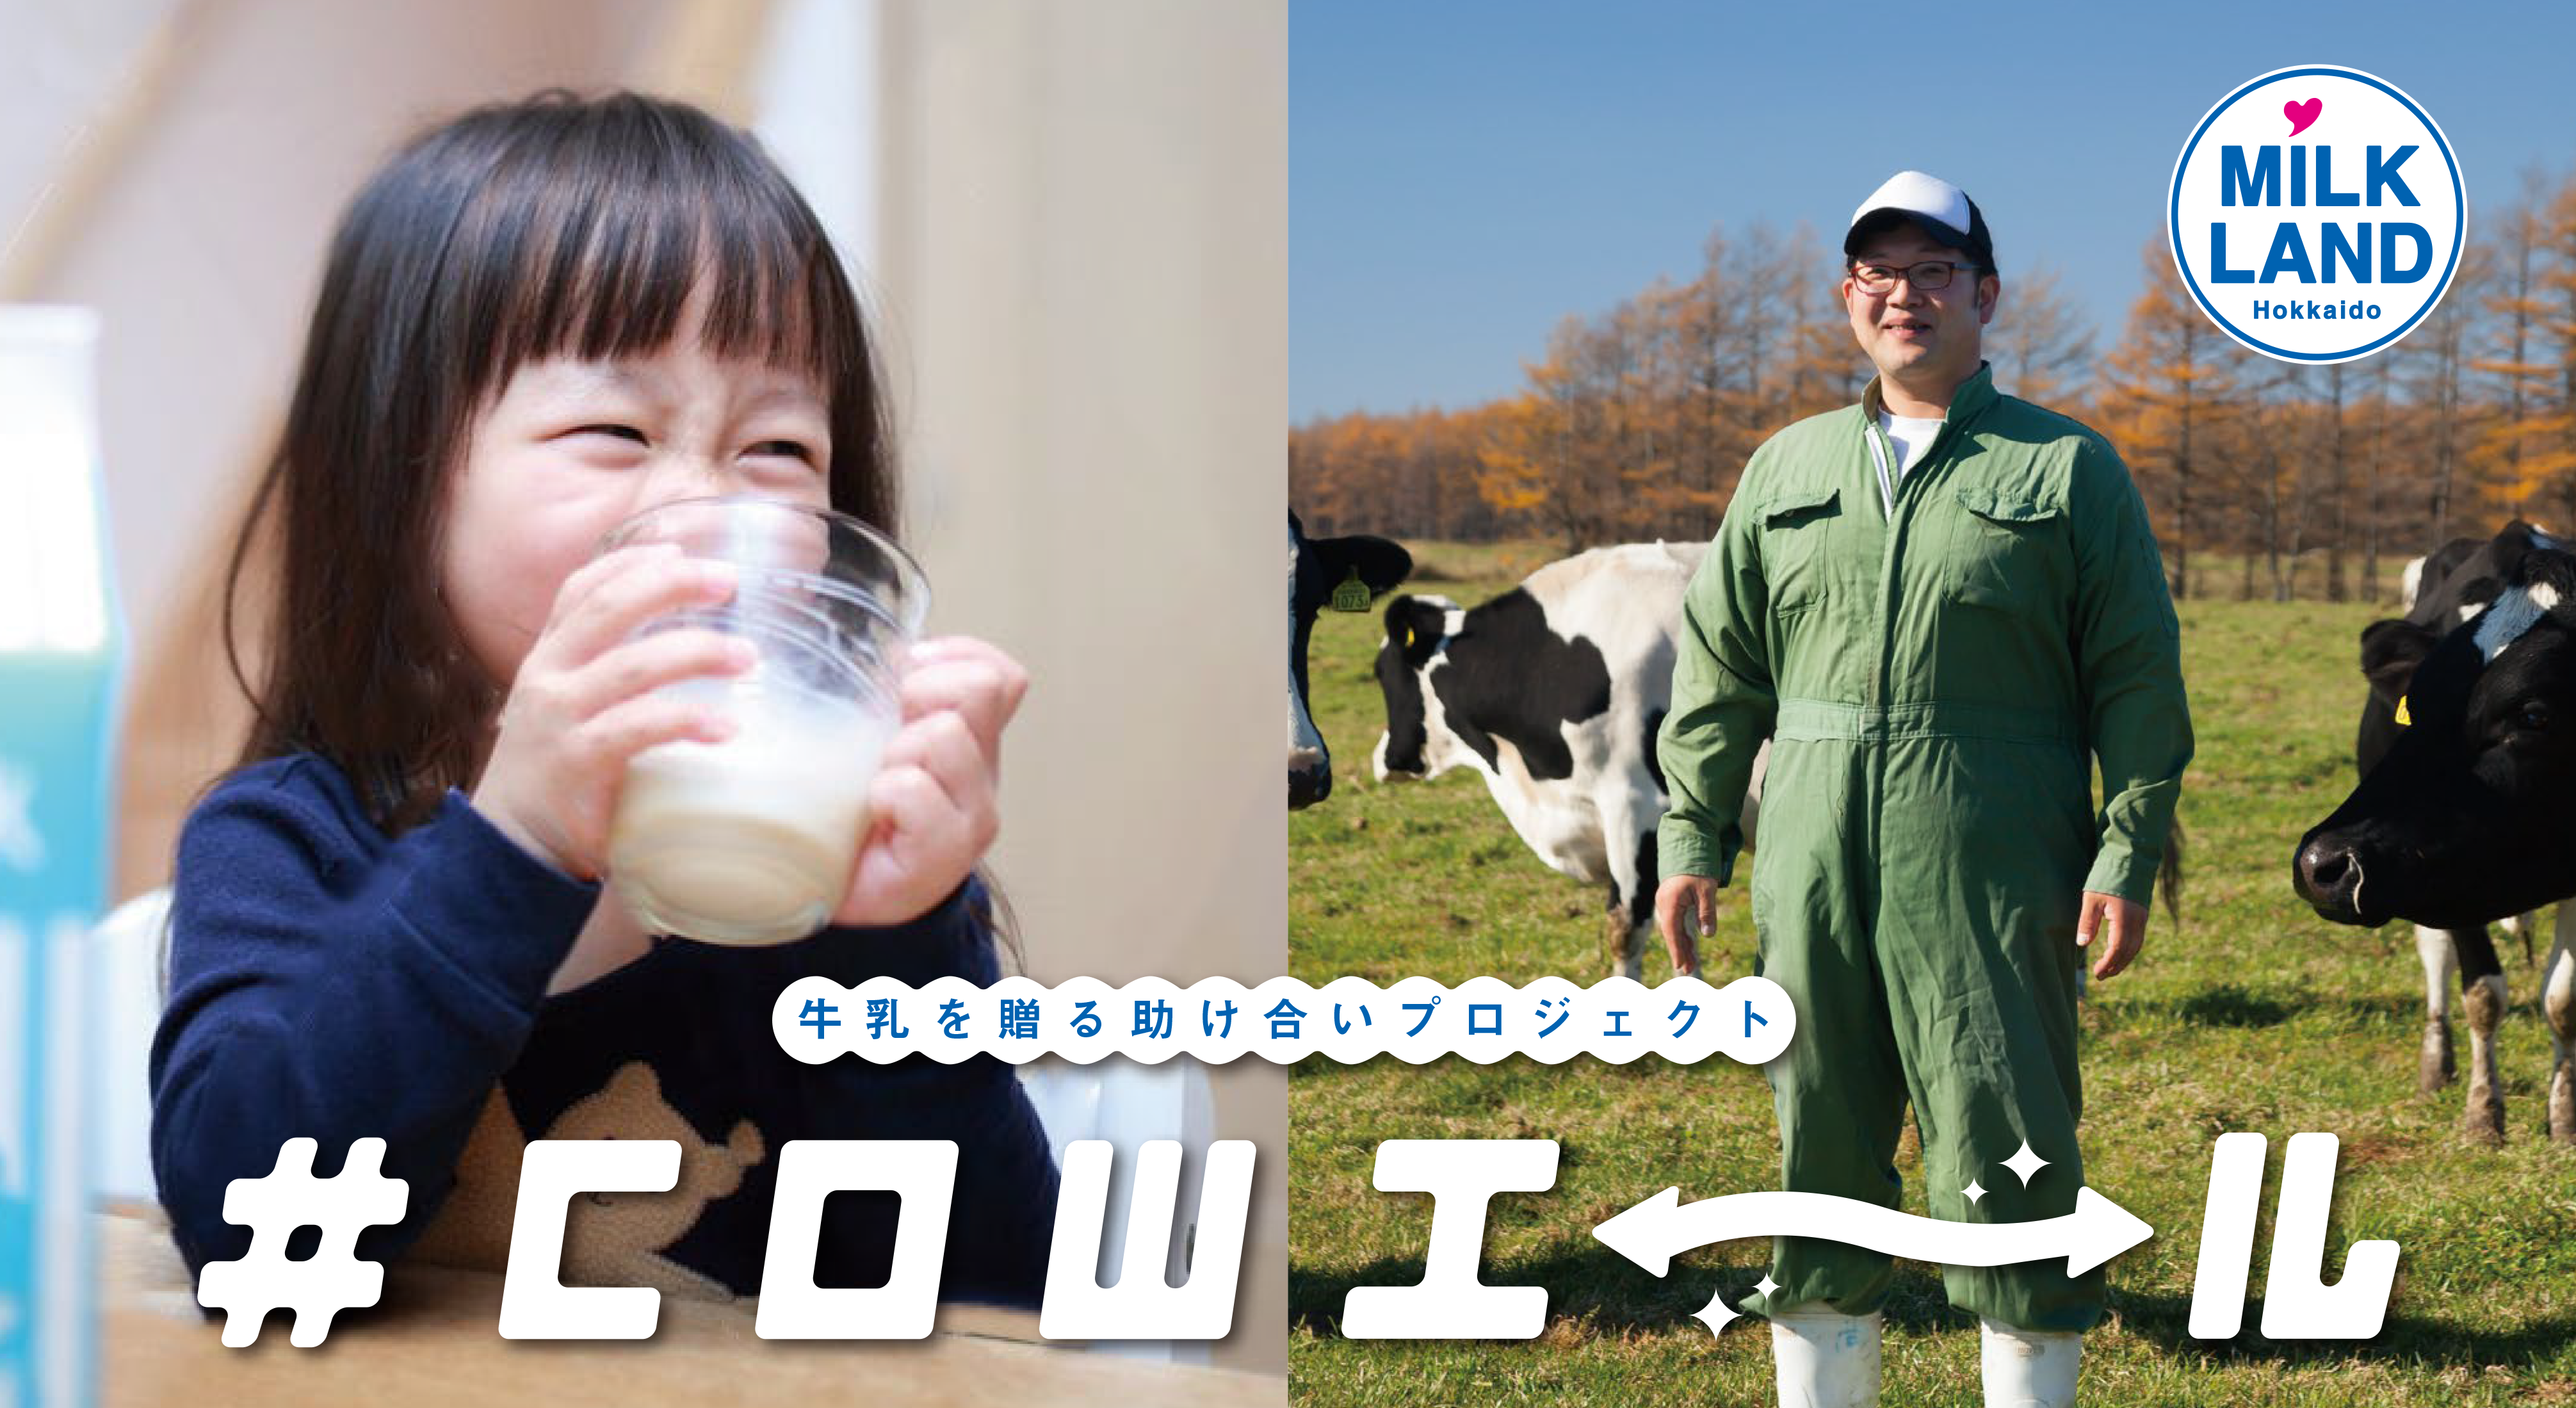 牛乳を贈る助け合いプロジェクトホクレン『#COWエール』